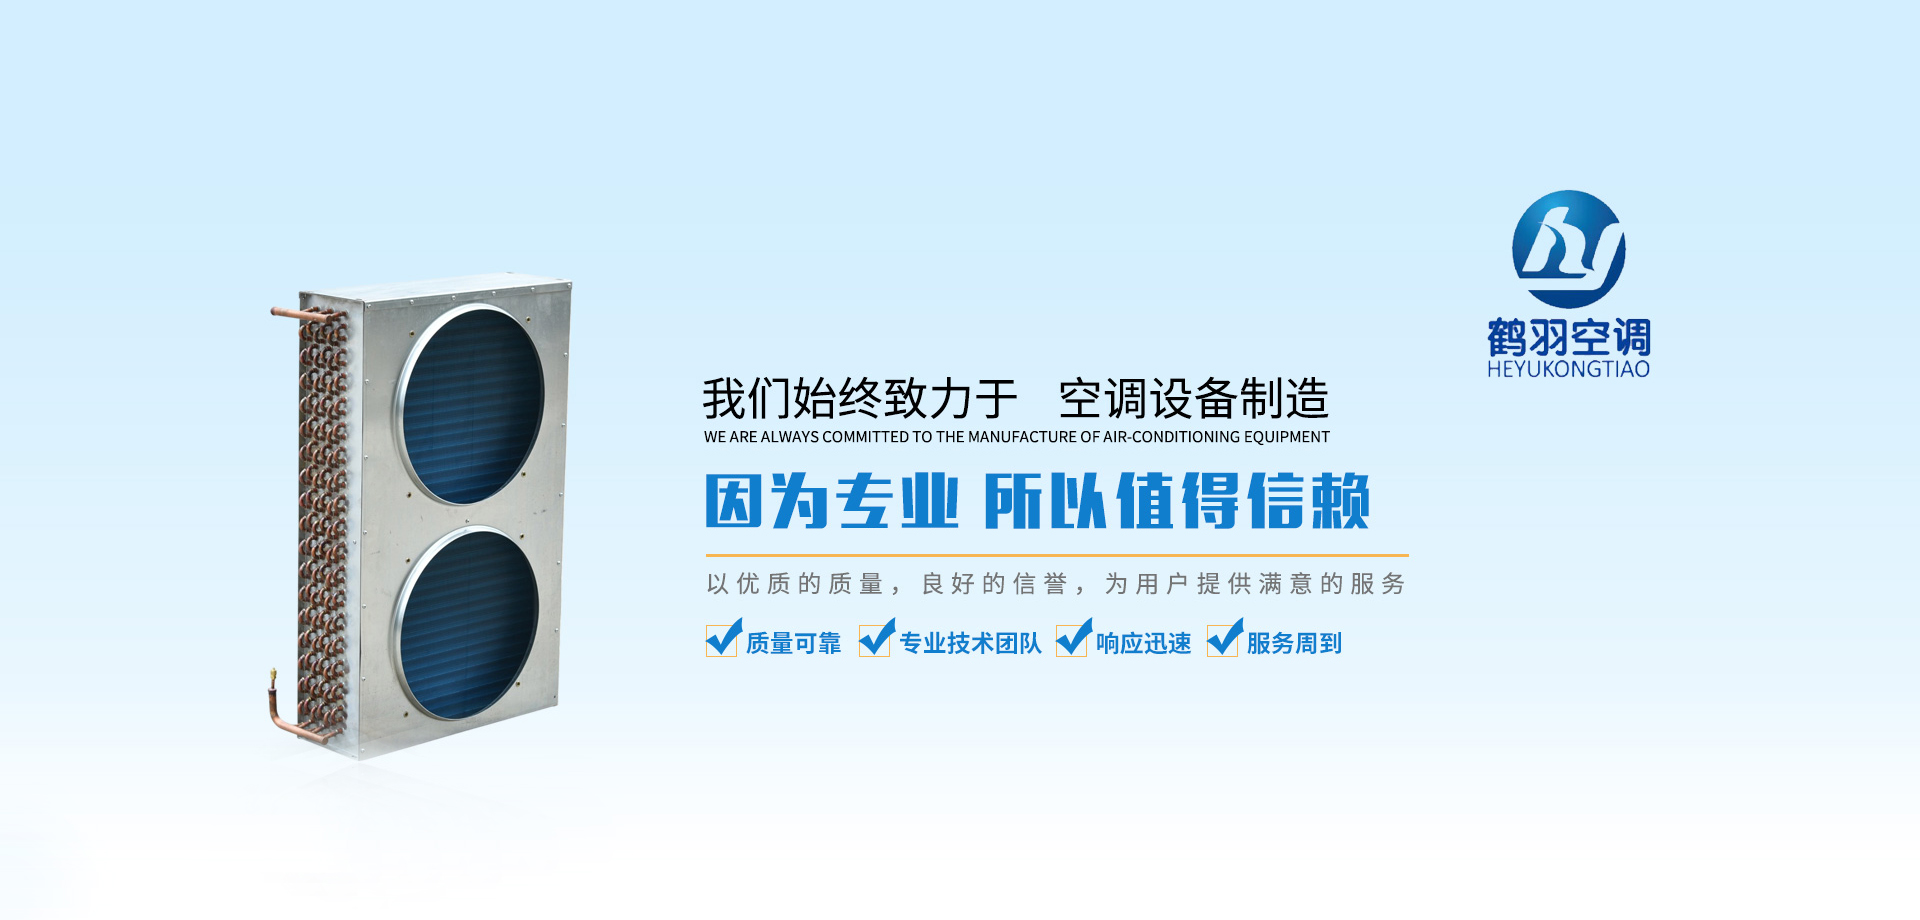 上海鹤羽空调设备有限公司